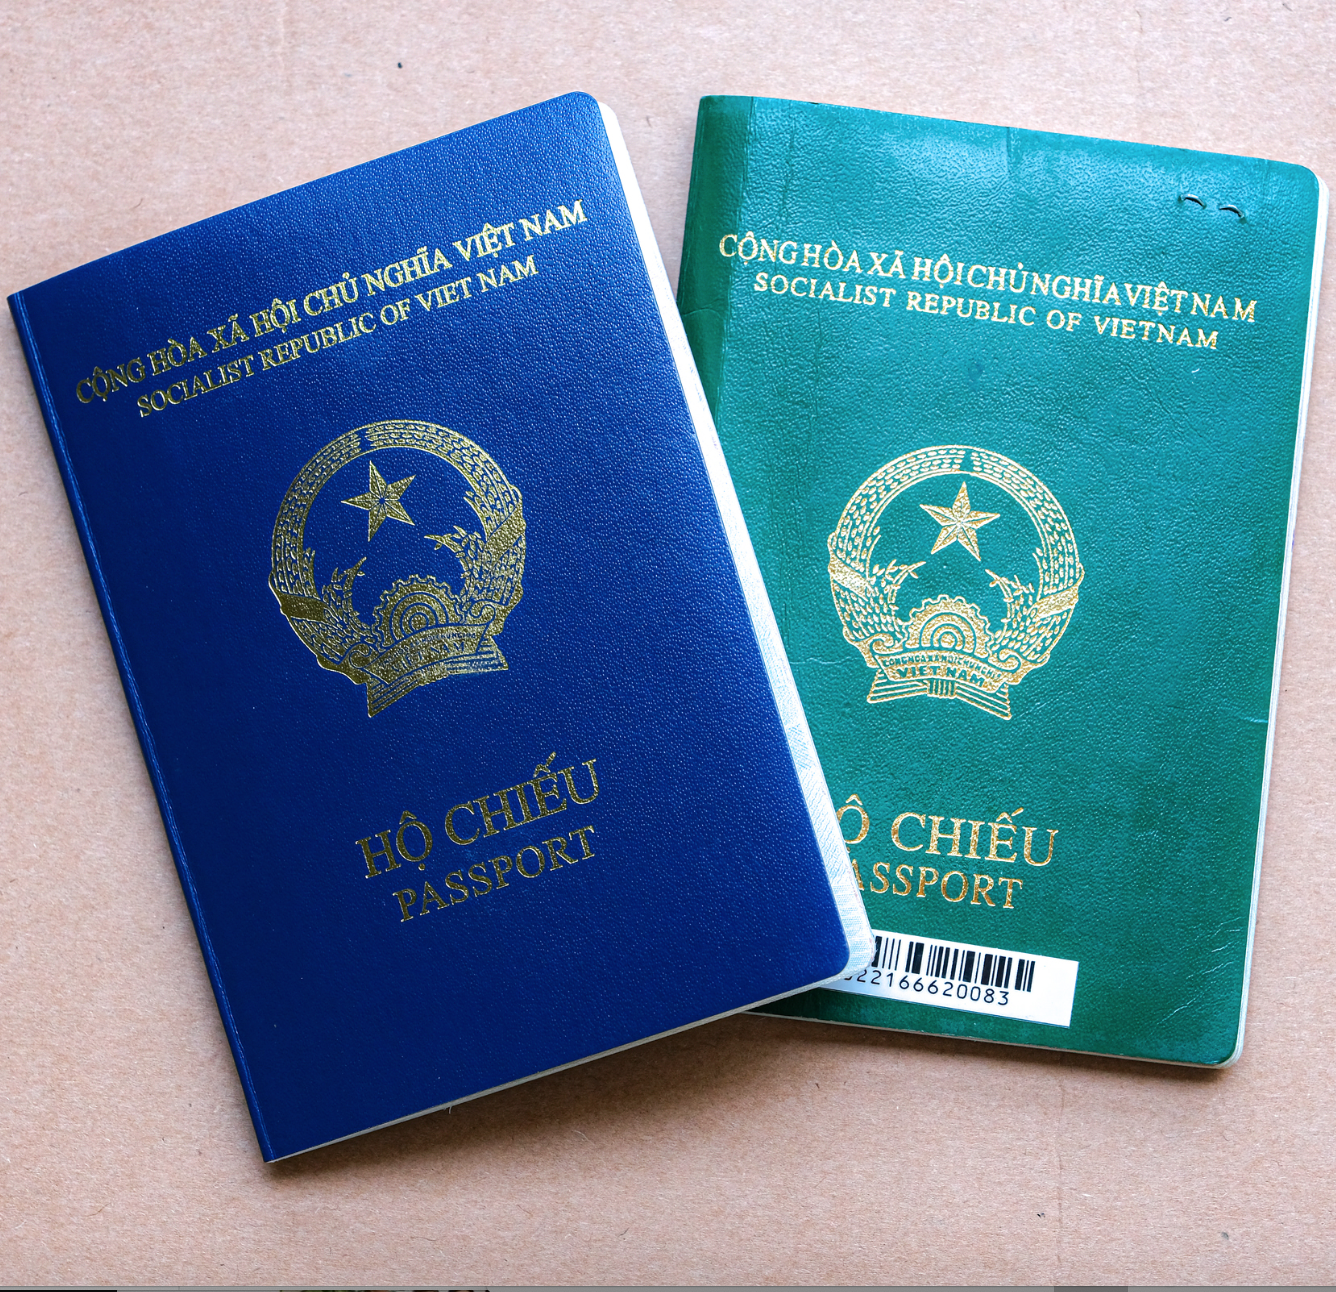 Tây Ban Nha thay đổi quyết định, chính thức công nhận hộ chiếu mới của Việt Nam - Ảnh 1